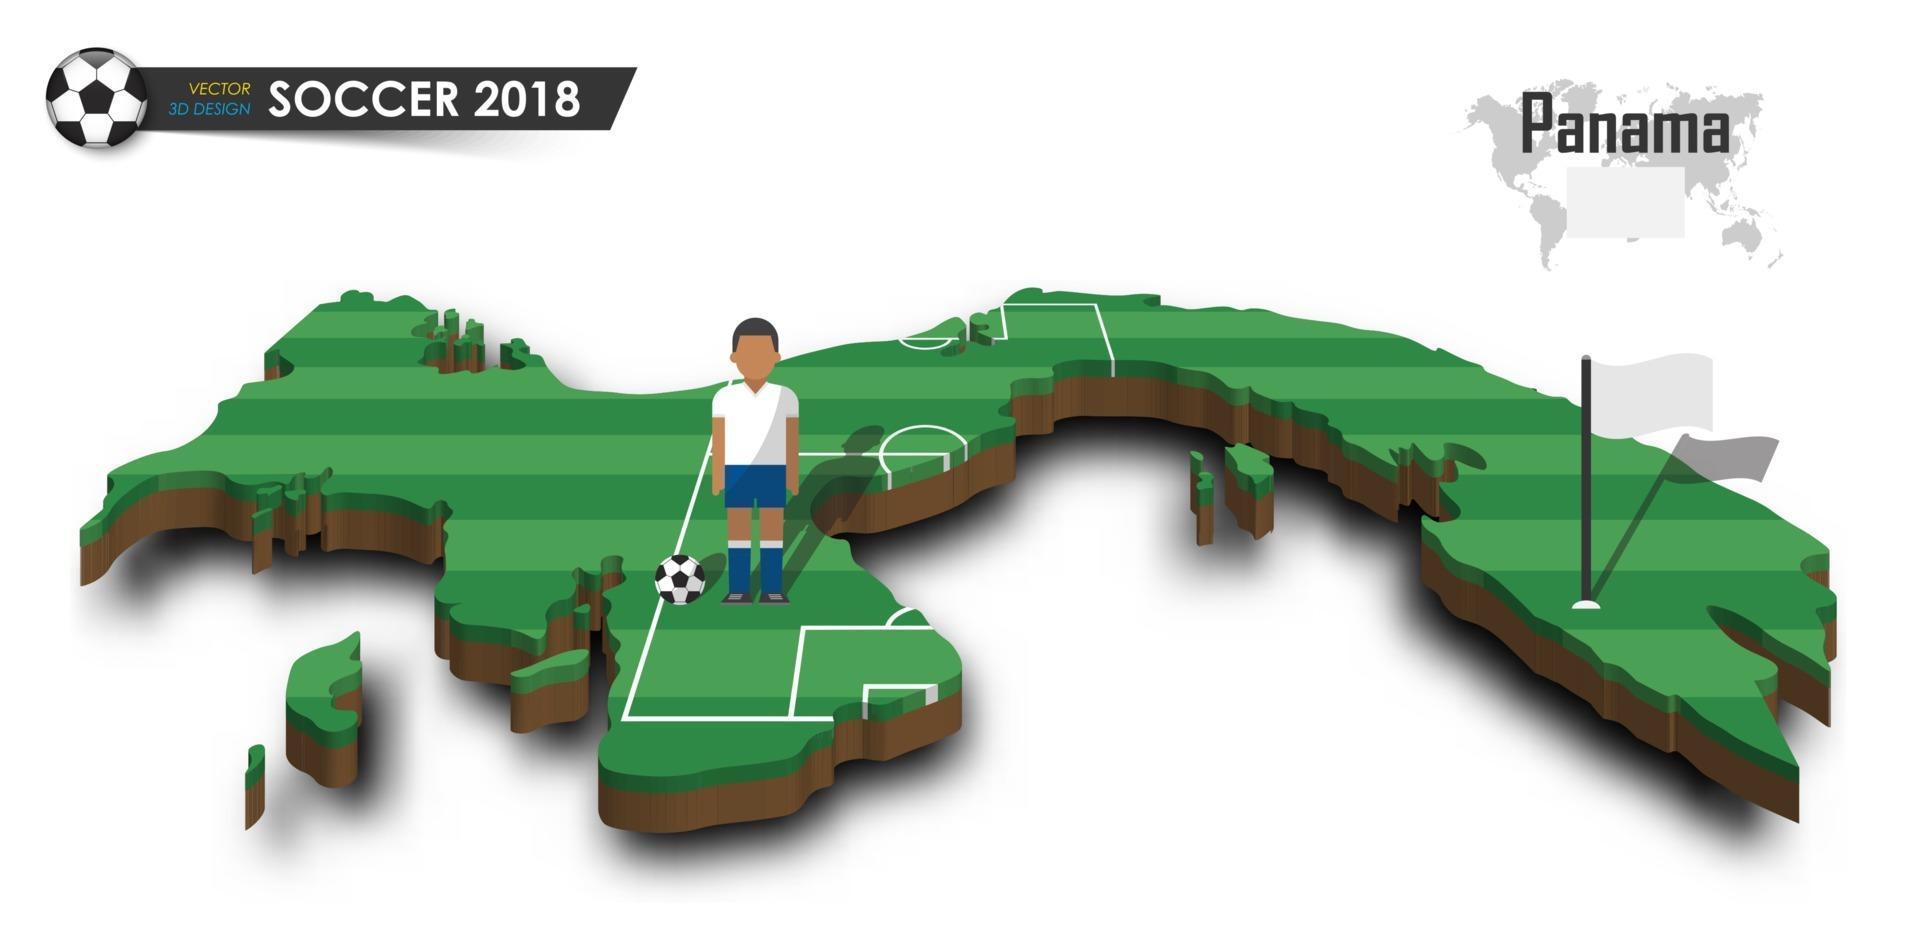 panama nazionale di calcio giocatore di football e bandiera su 3d design mappa del paese isolato vettore di fondo per il campionato mondiale internazionale torneo 2018 concept